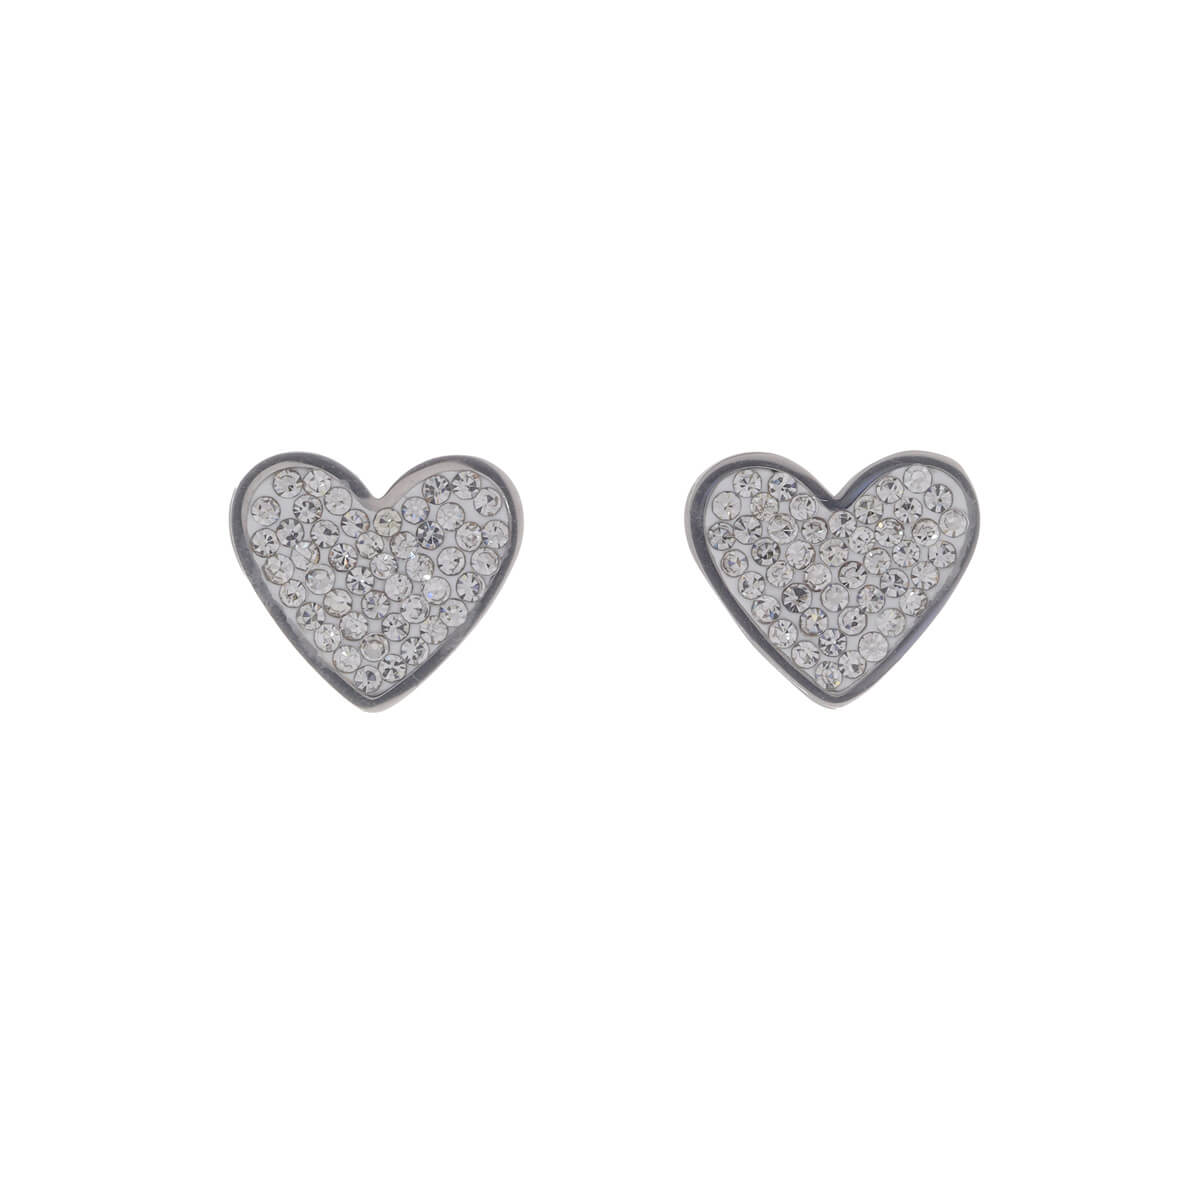 Steel heart earrings (steel 316L)